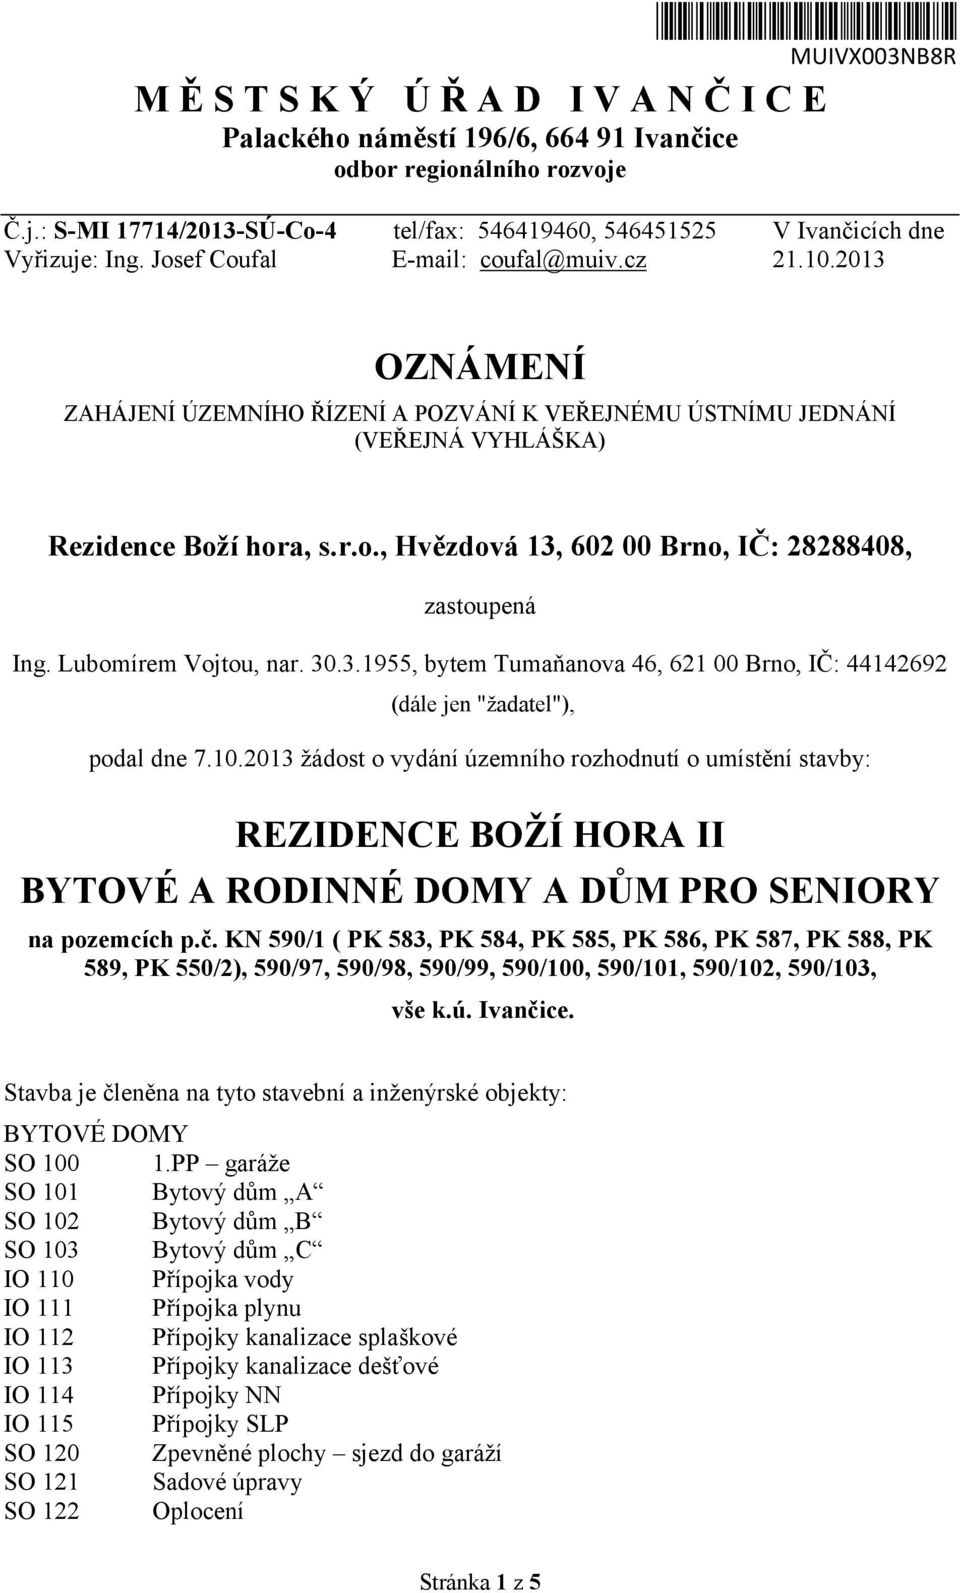 Lubomírem Vojtou, nar. 30.3.1955, bytem Tumaňanova 46, 621 00 Brno, IČ: 44142692 (dále jen "žadatel"), podal dne 7.10.